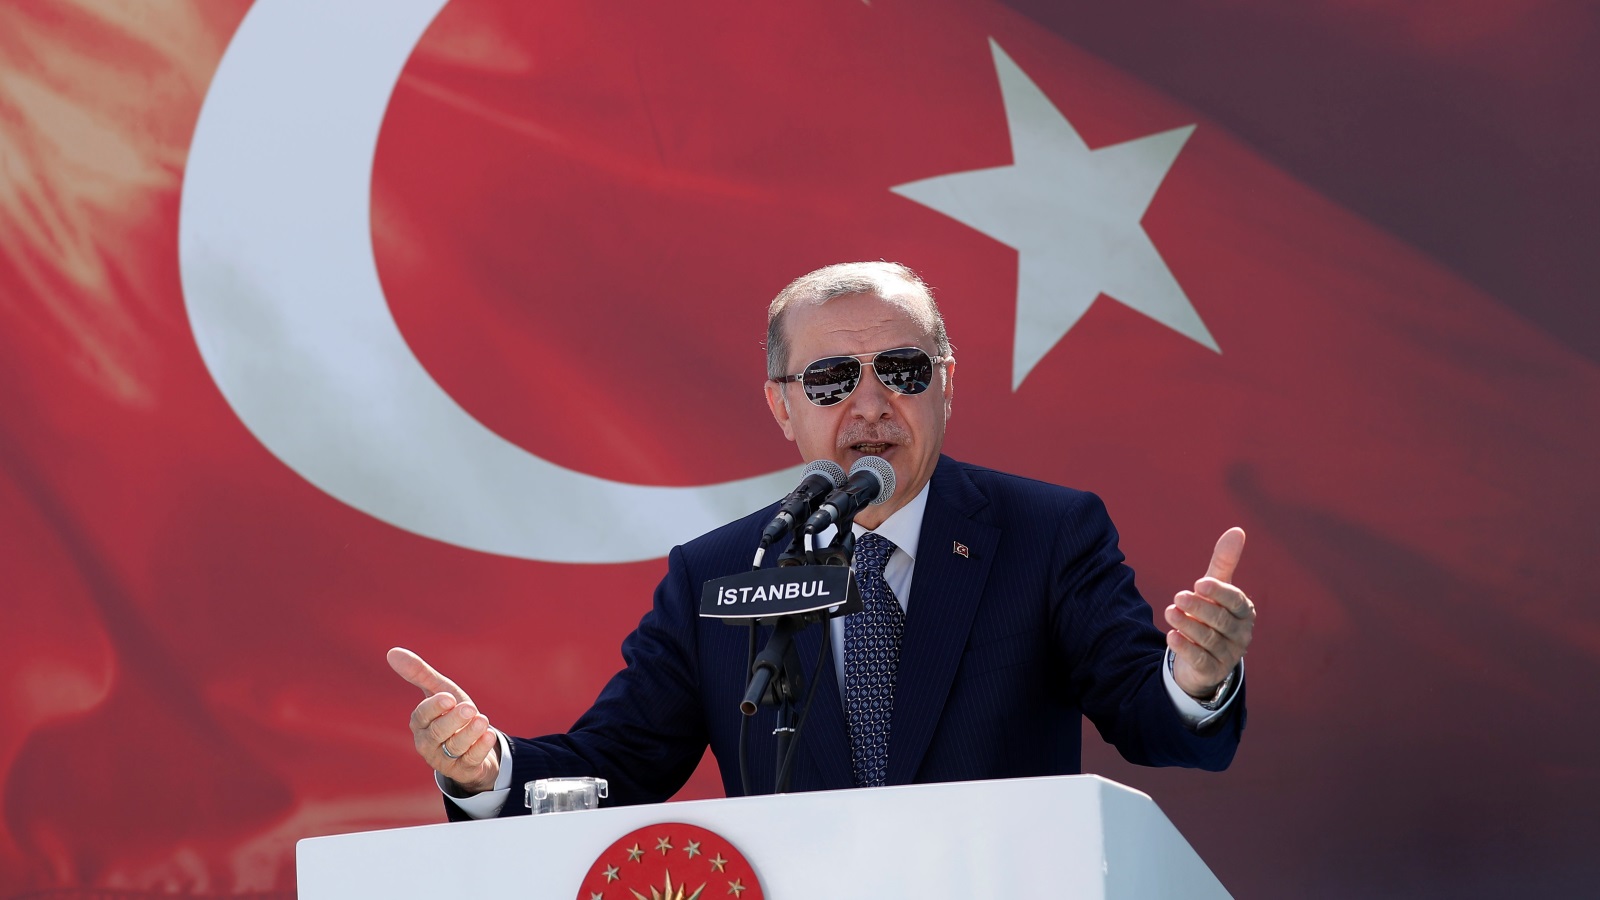 الغالبية العظمى في تركيا تؤيد السياسة التي ينهجها رجب طيب أردوغان في مختلف المجالات، إضافة إلى نقل تركيا من الفقر إلى مصاف الدول العشرين